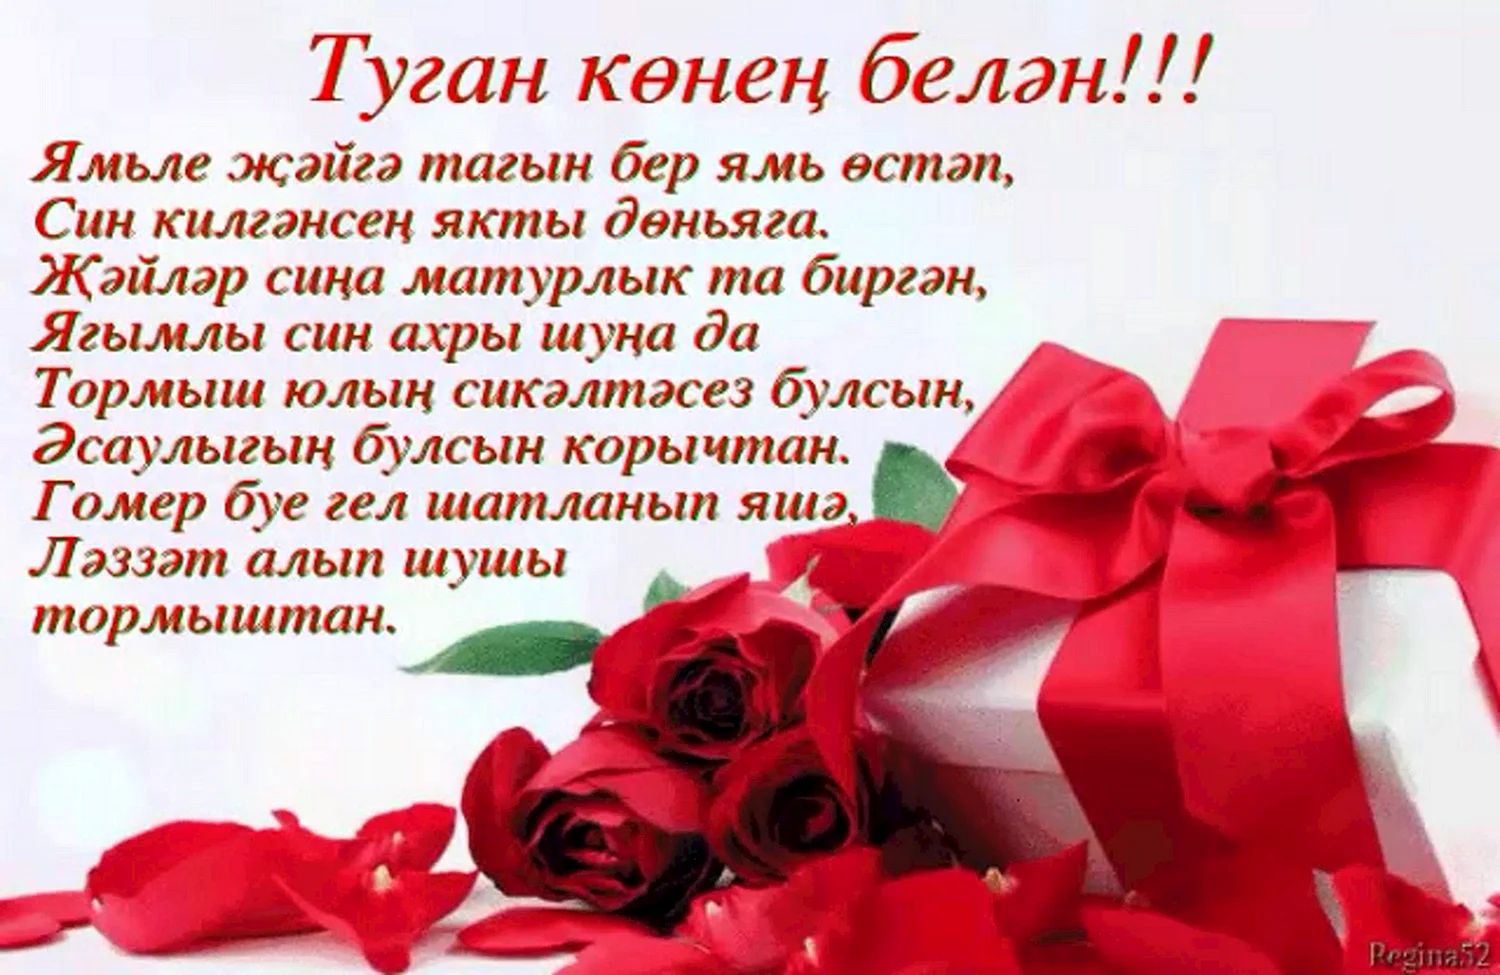 Поздравление на татарском языке маме - 73 фото